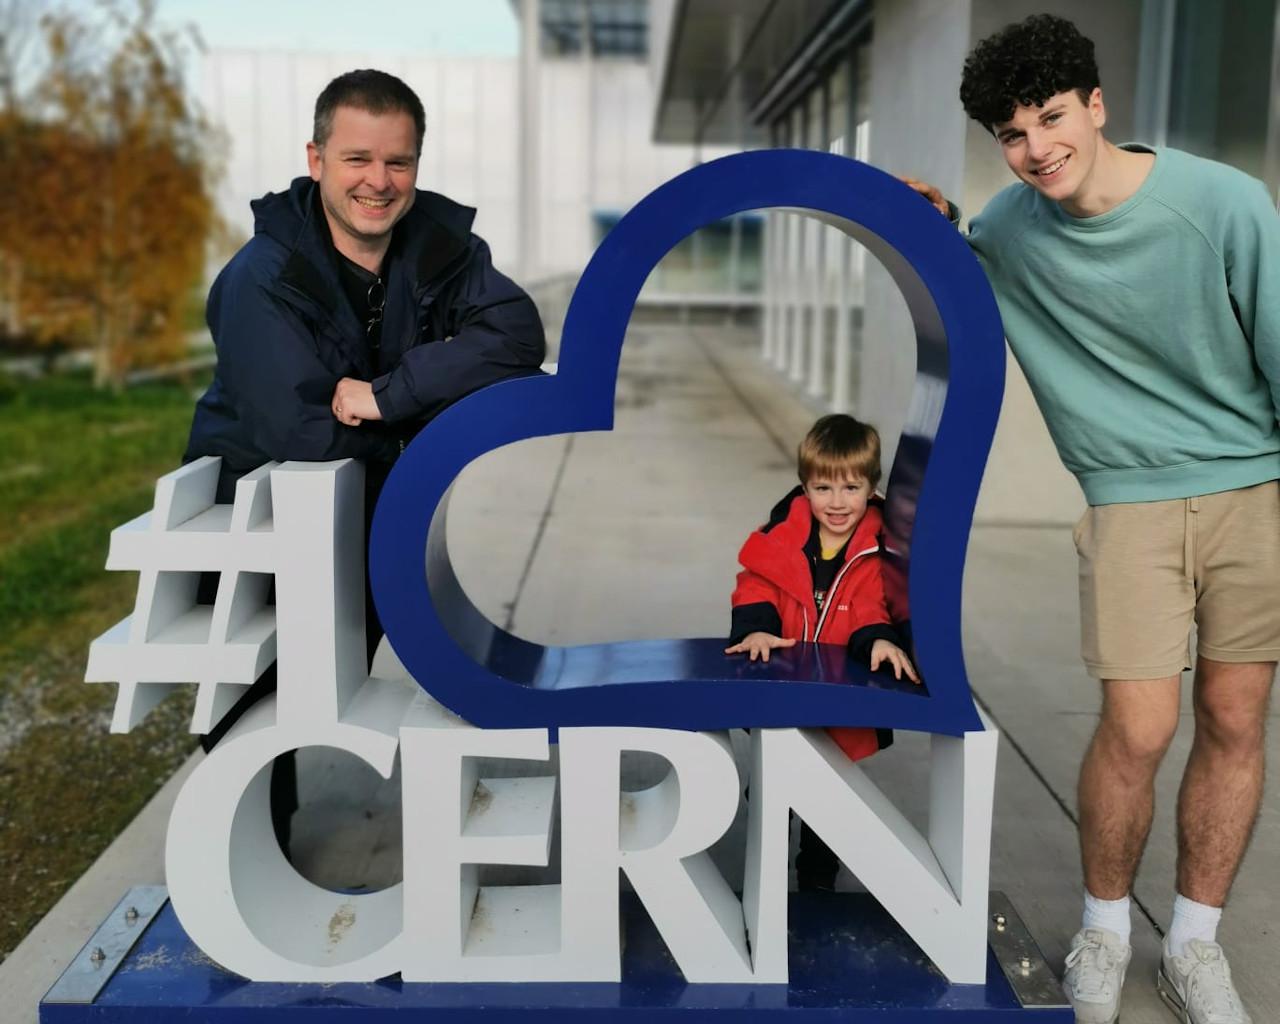 We love CERN